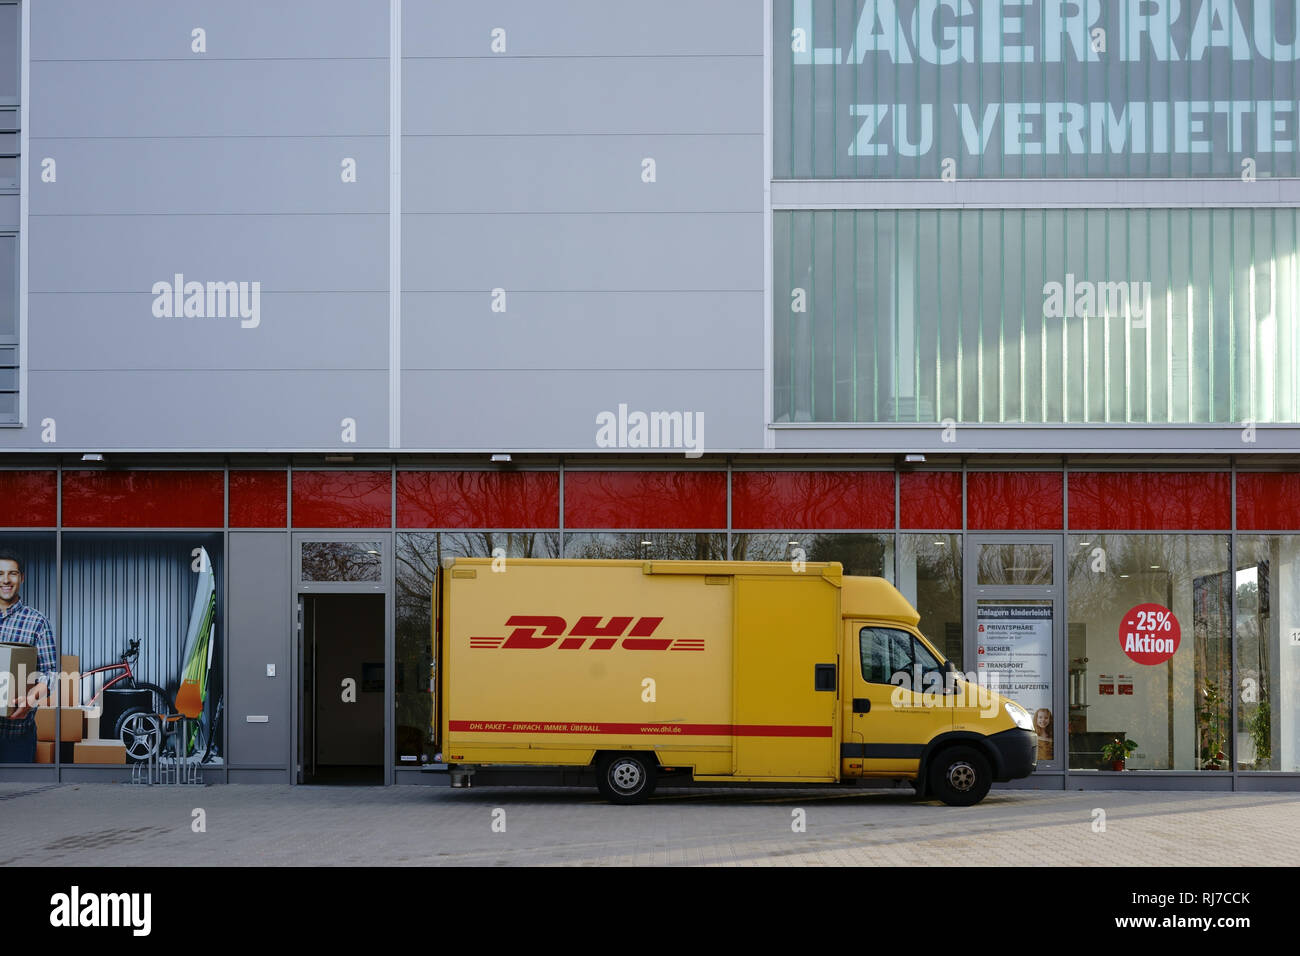 Ein Paketzusteller und Lieferfahrzeug von der DHL liefert Pakete aus. Stock Photo